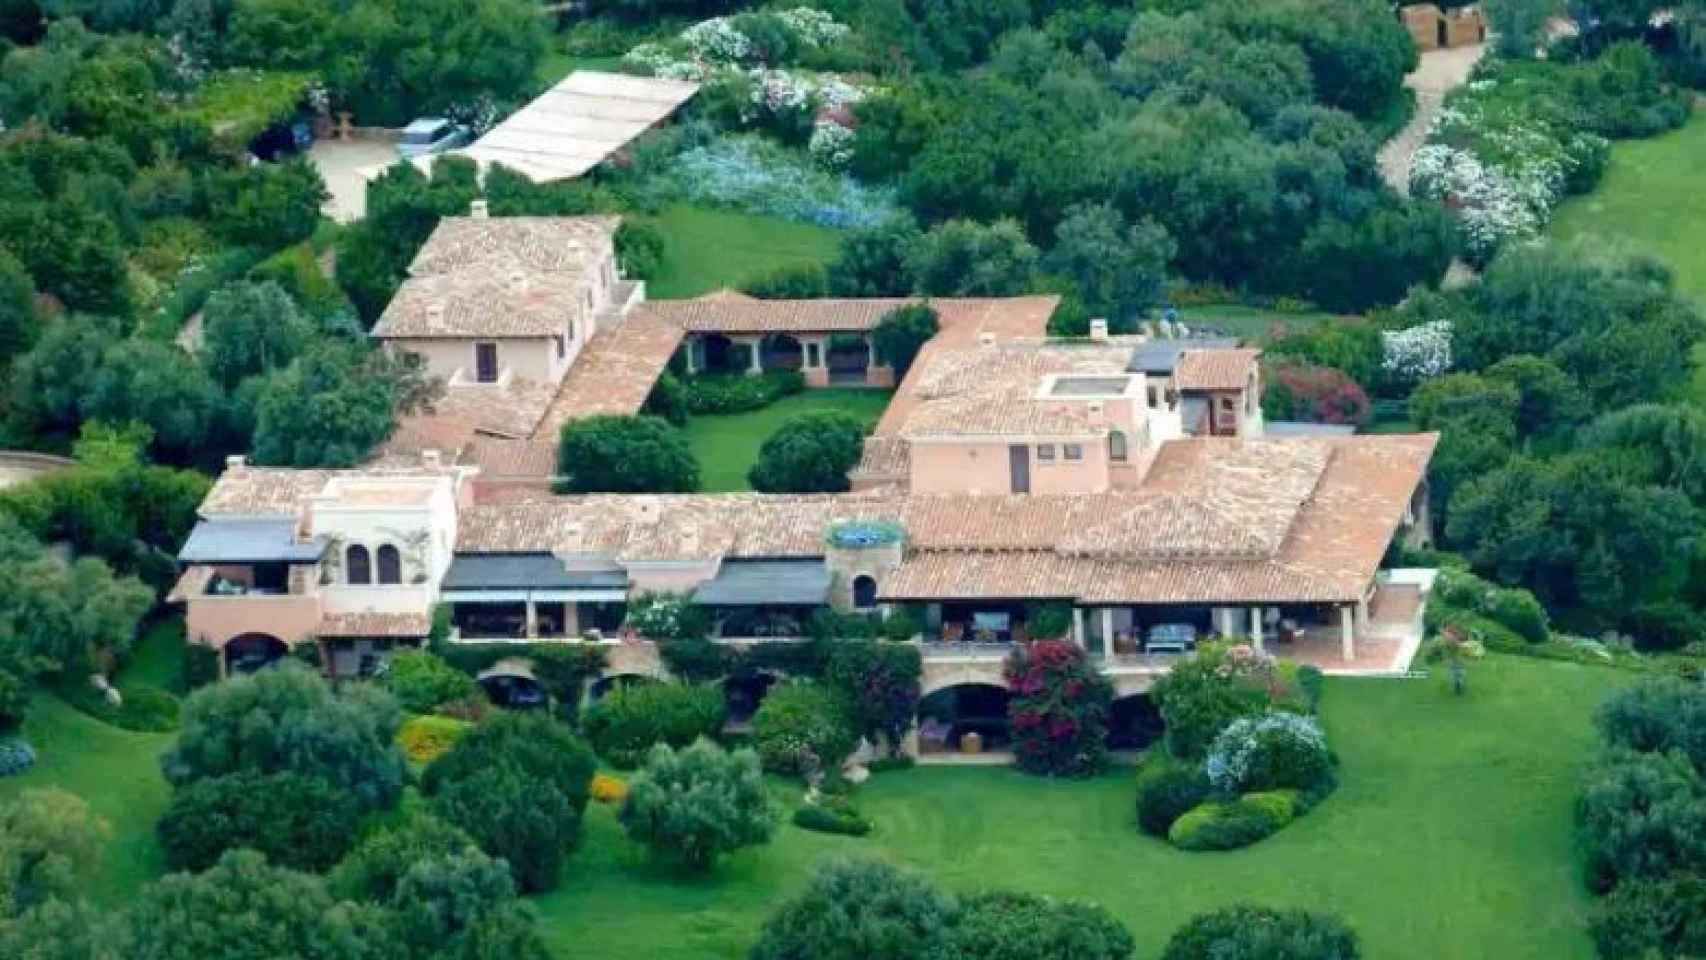 Vista aérea de Villa Certosa, la mansión de los escándalos de Berlusconi.